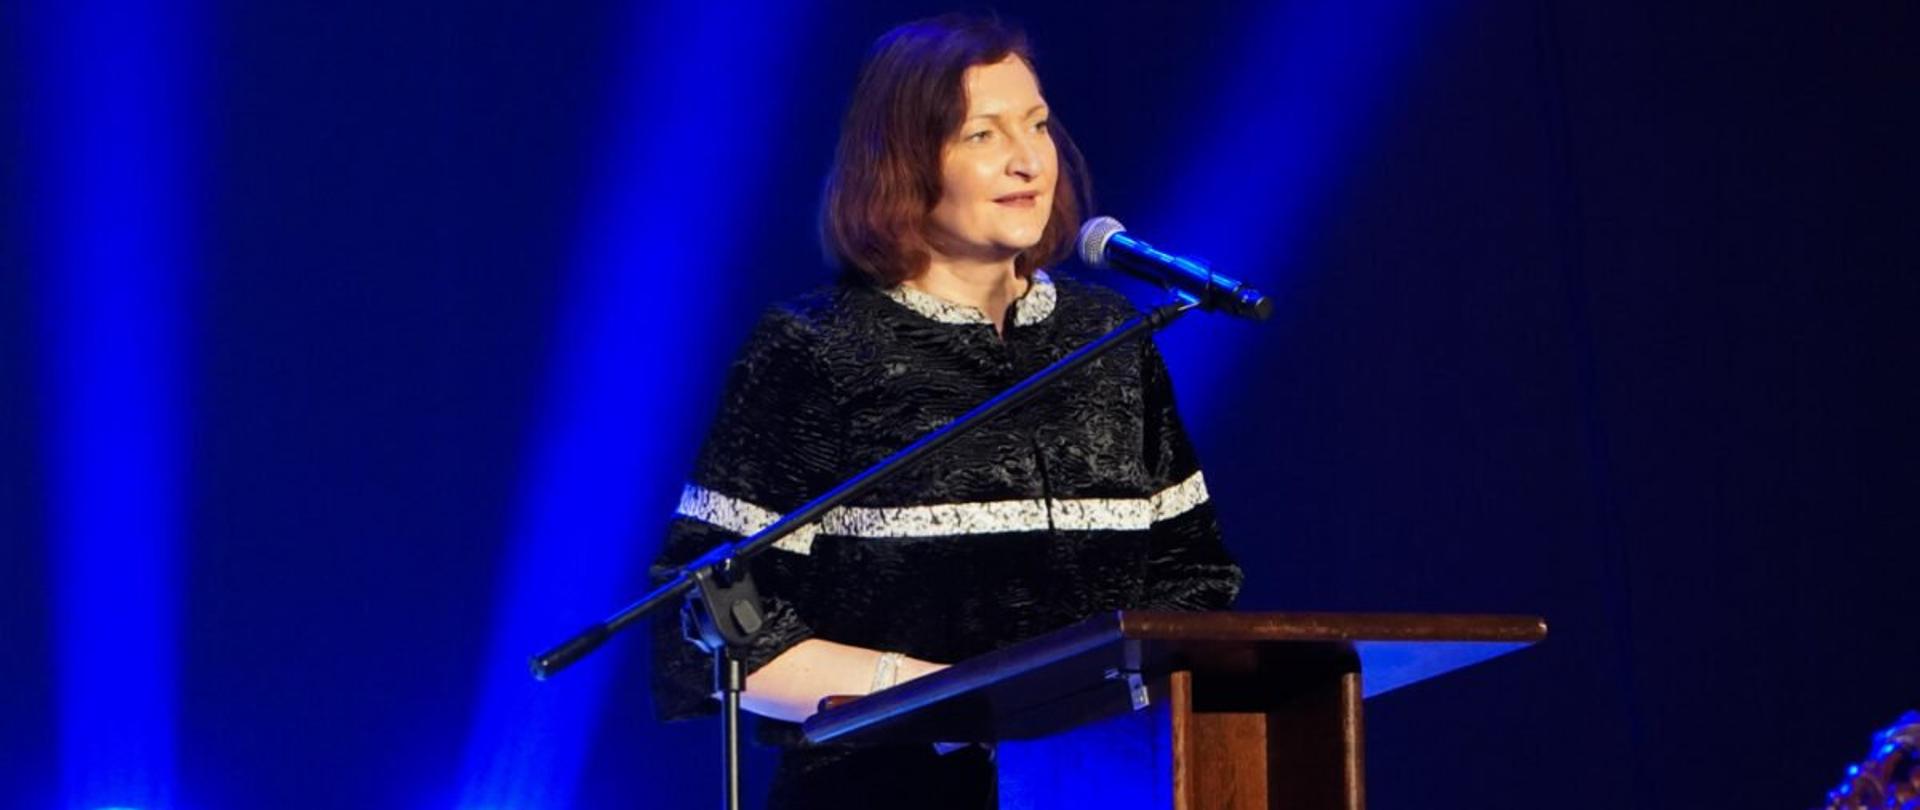 Wojewoda podkarpacki Ewa Leniart przemawia podczas uroczystości 668. rocznicy lokacji Rzeszowa. Stoi przy mównicy, oświetla ją niebieskie światło z reflektorów.